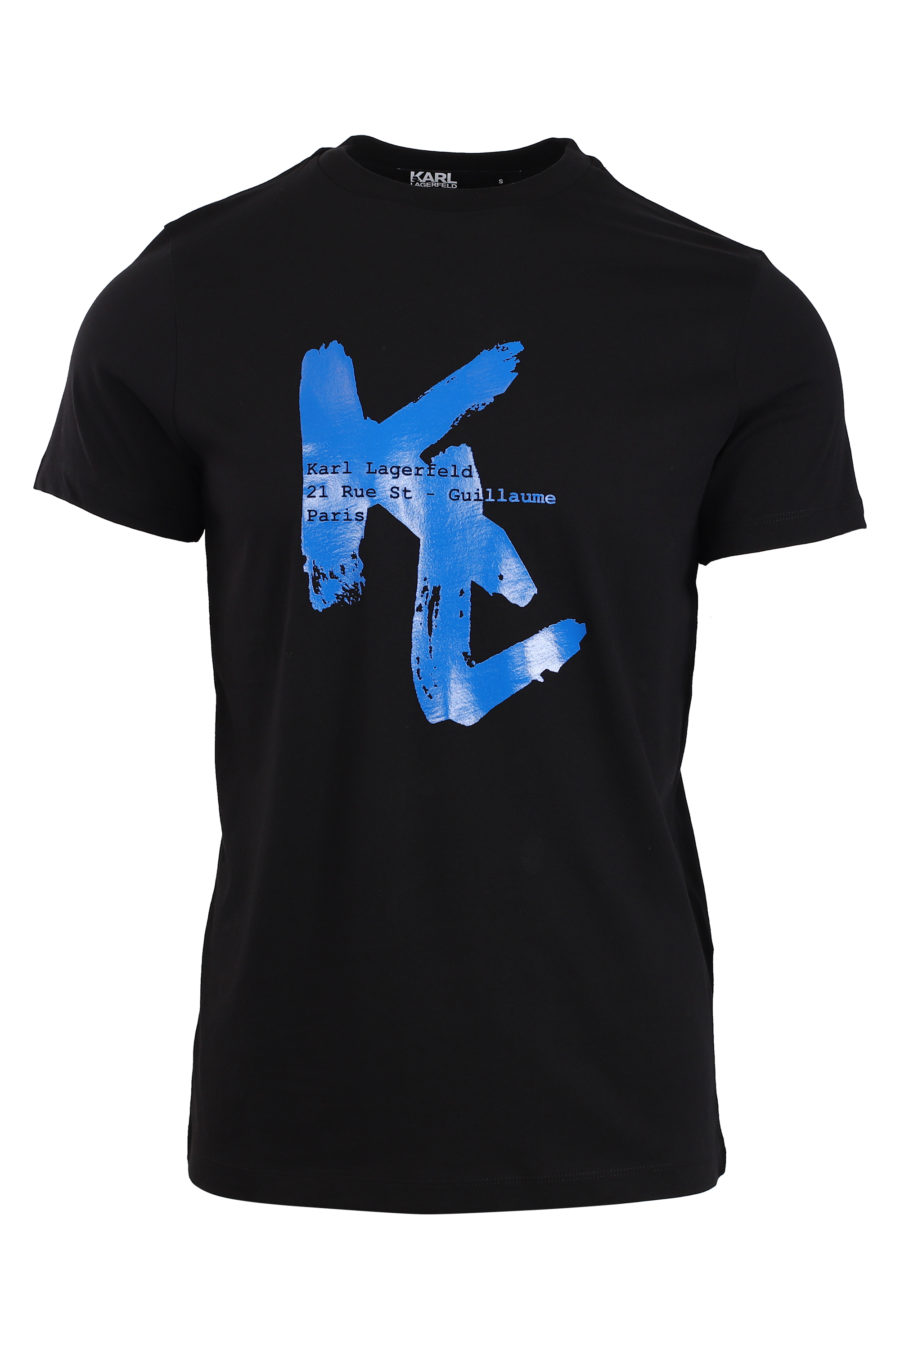 Camiseta negra con maxi logo azul - IMG 0827